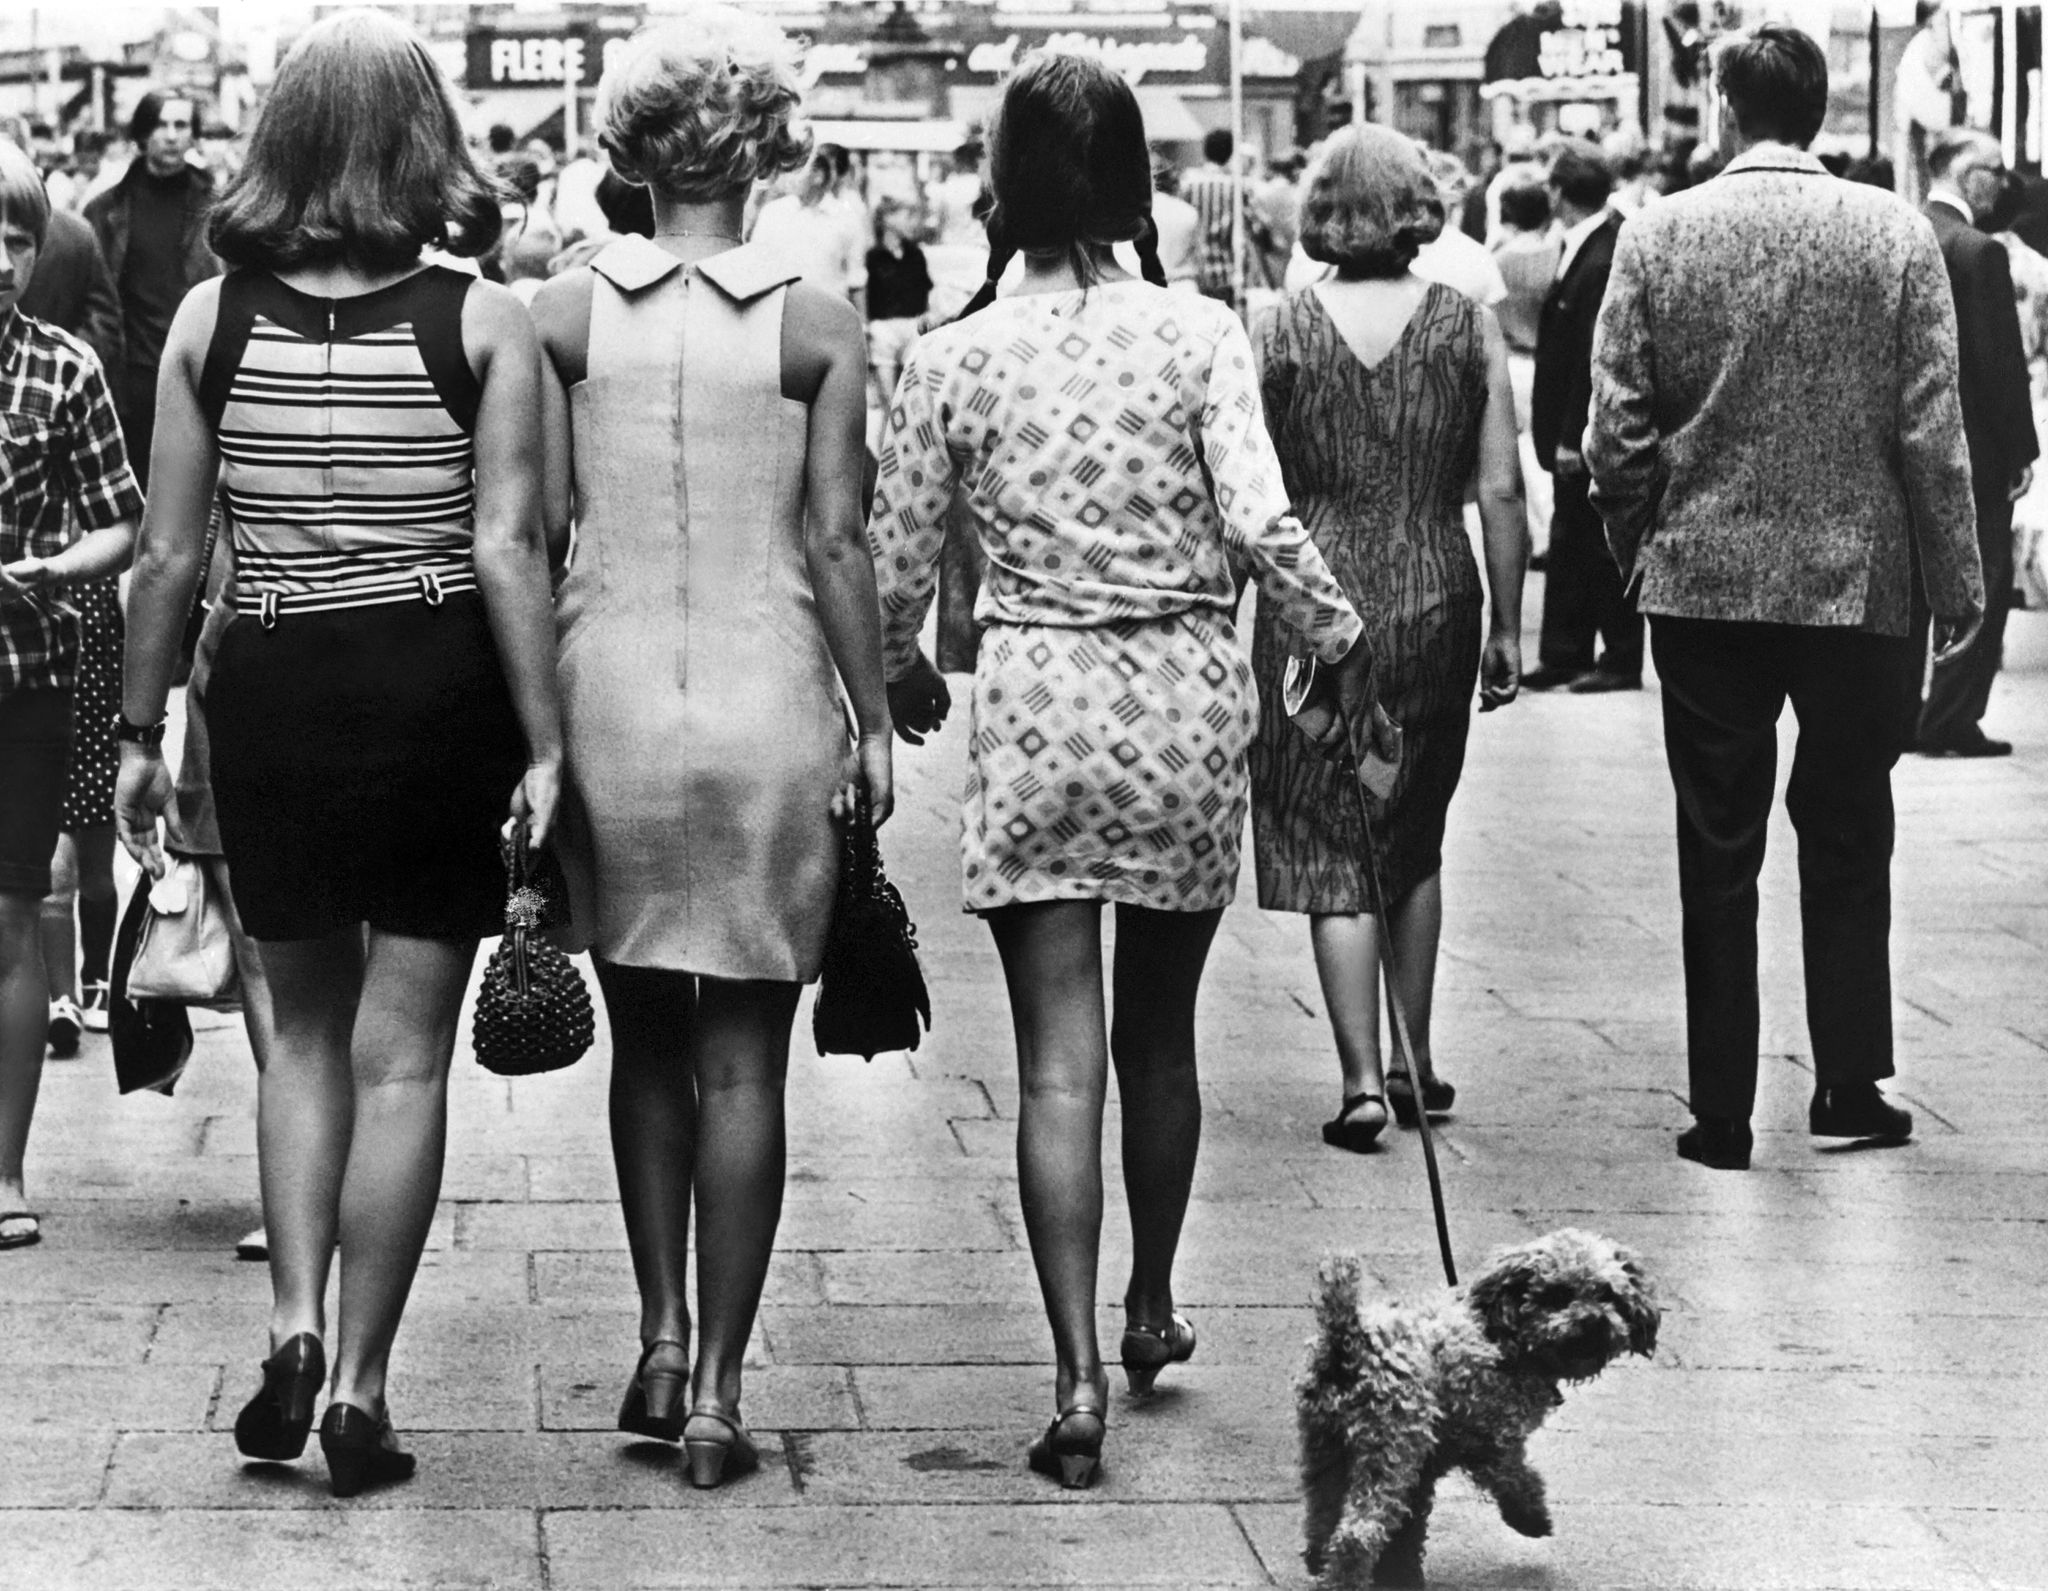 La mini-jupe, scandaleuse des sixties, devenue un basique – L'Express